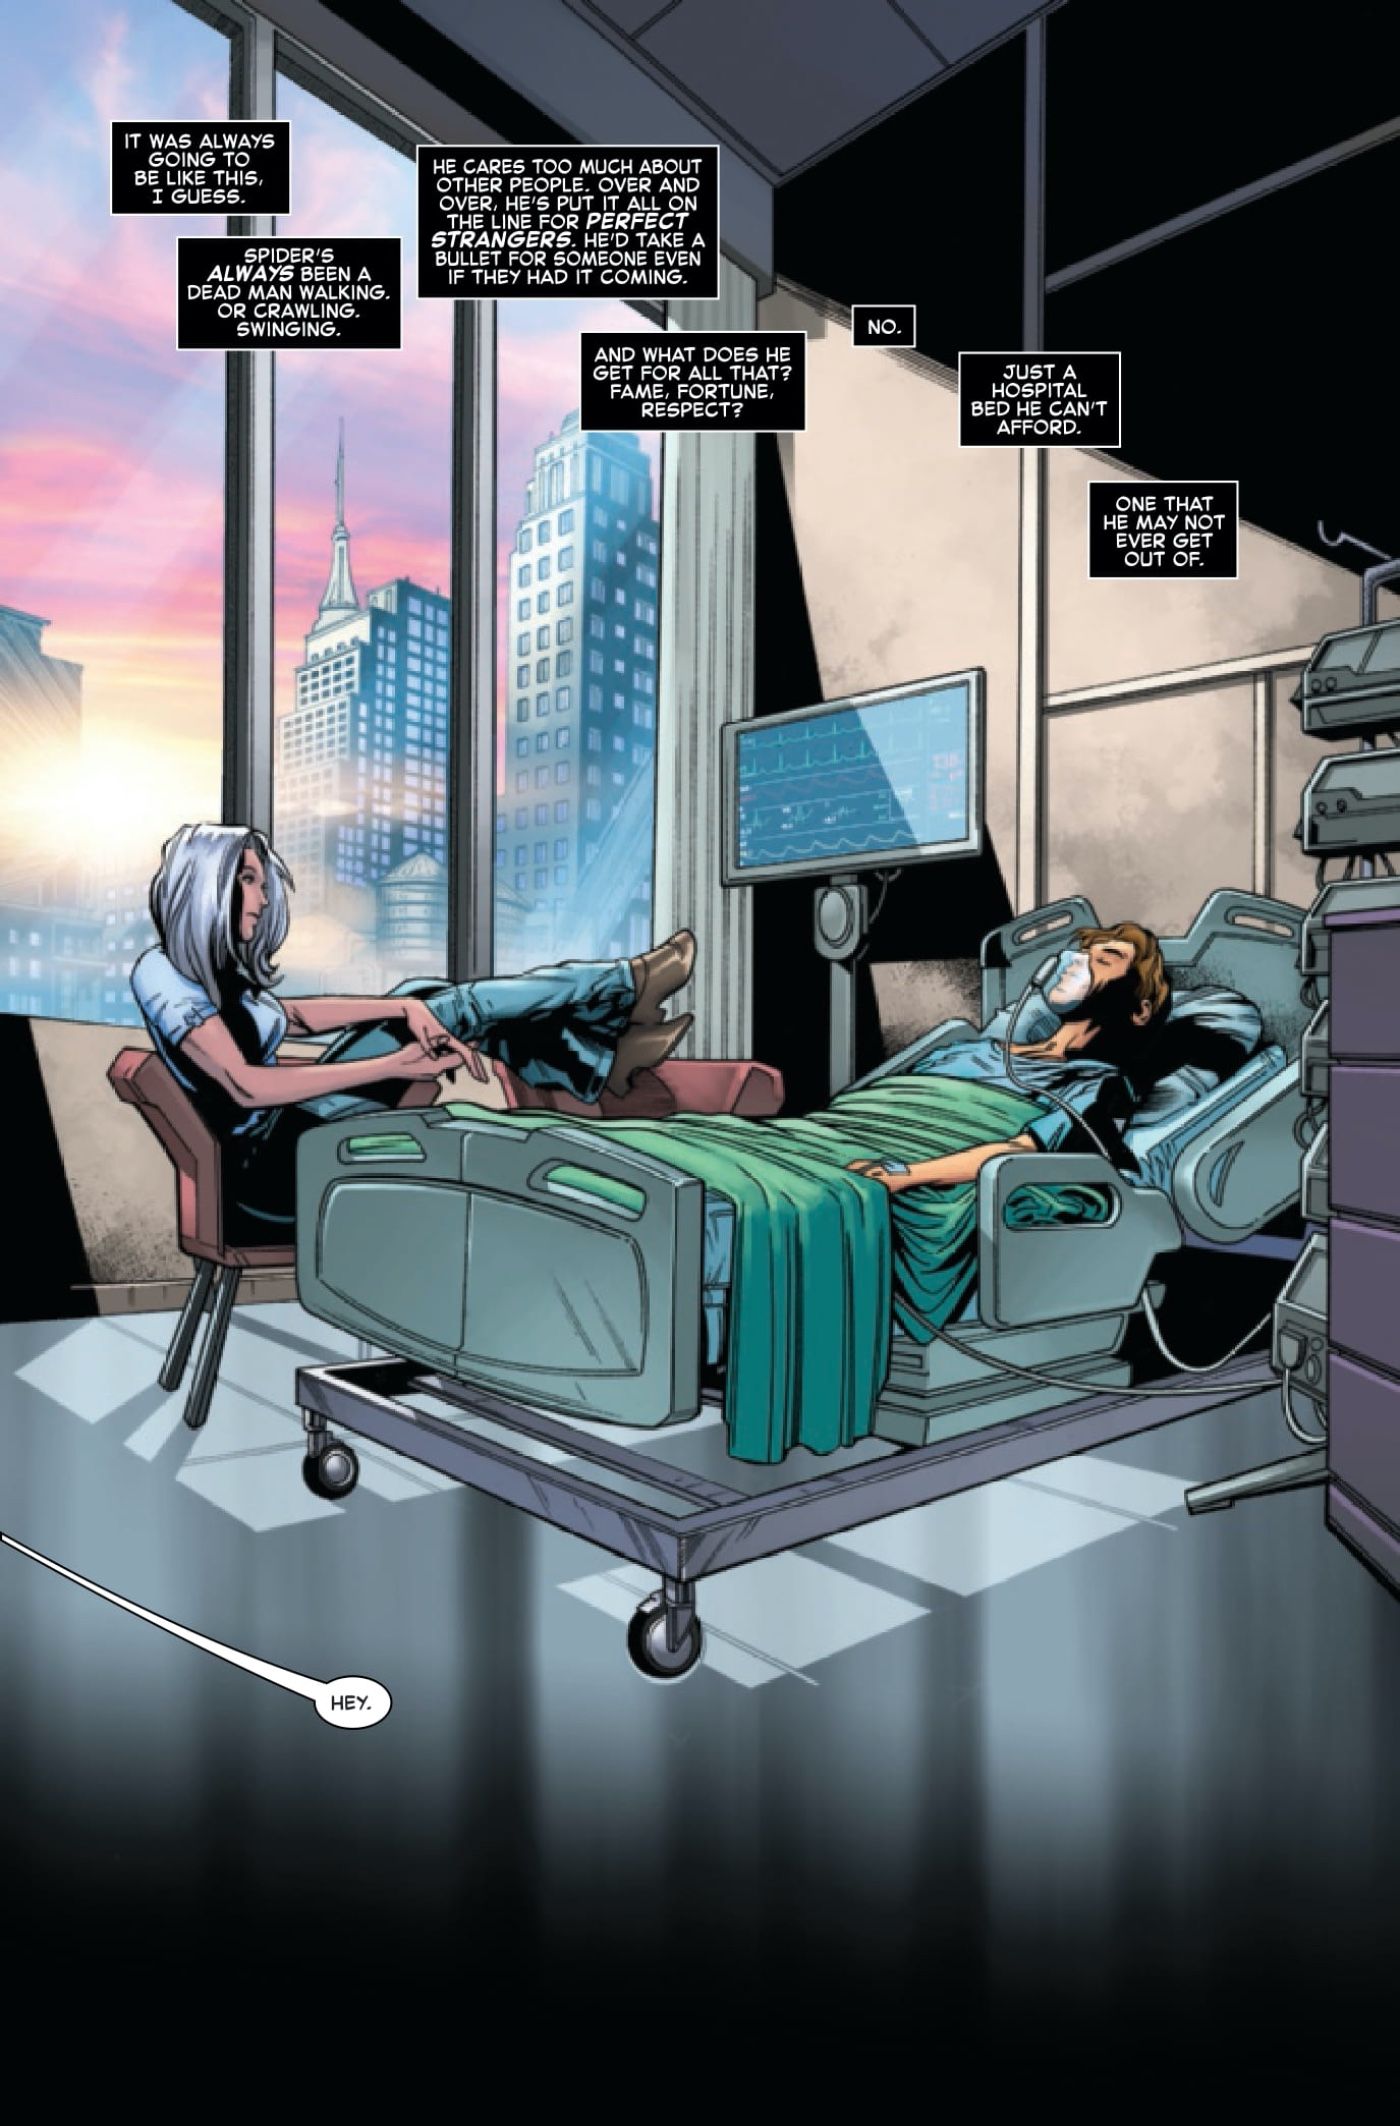 Black Cat sitting by Peter Parker's bedside